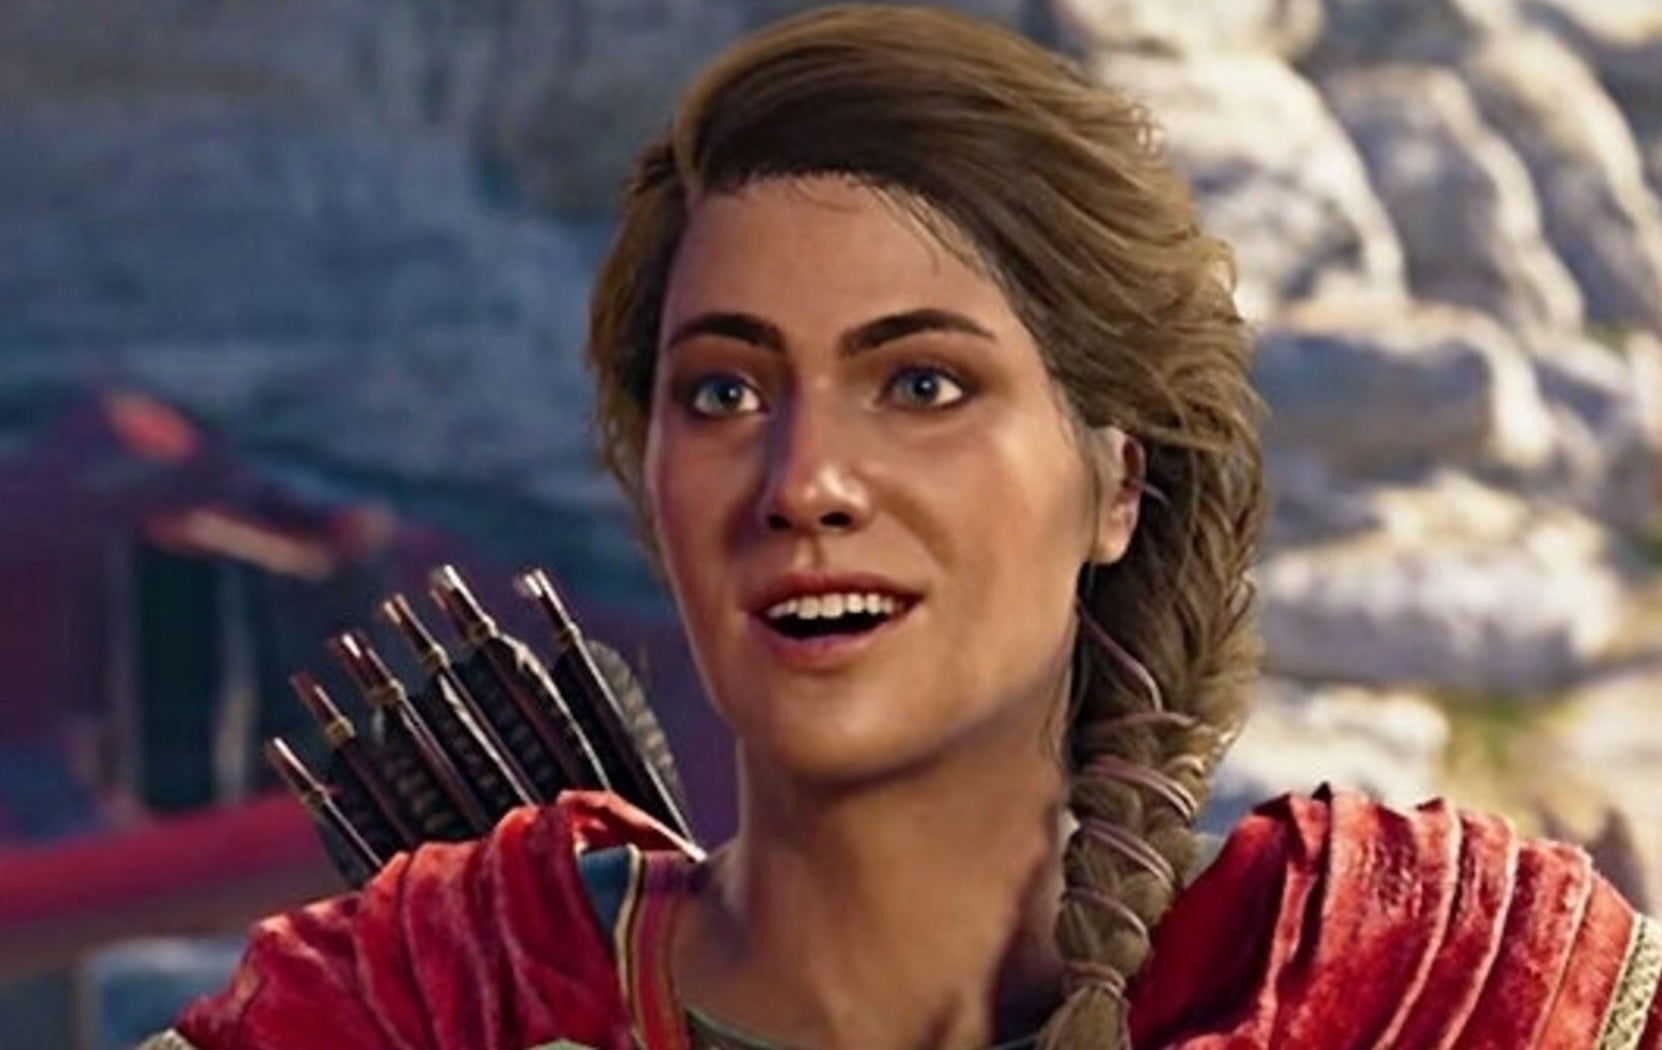 Obrazki dla Darmowy "weekend" z Assassin's Creed Odyssey - przetestuj grę przez cztery dni